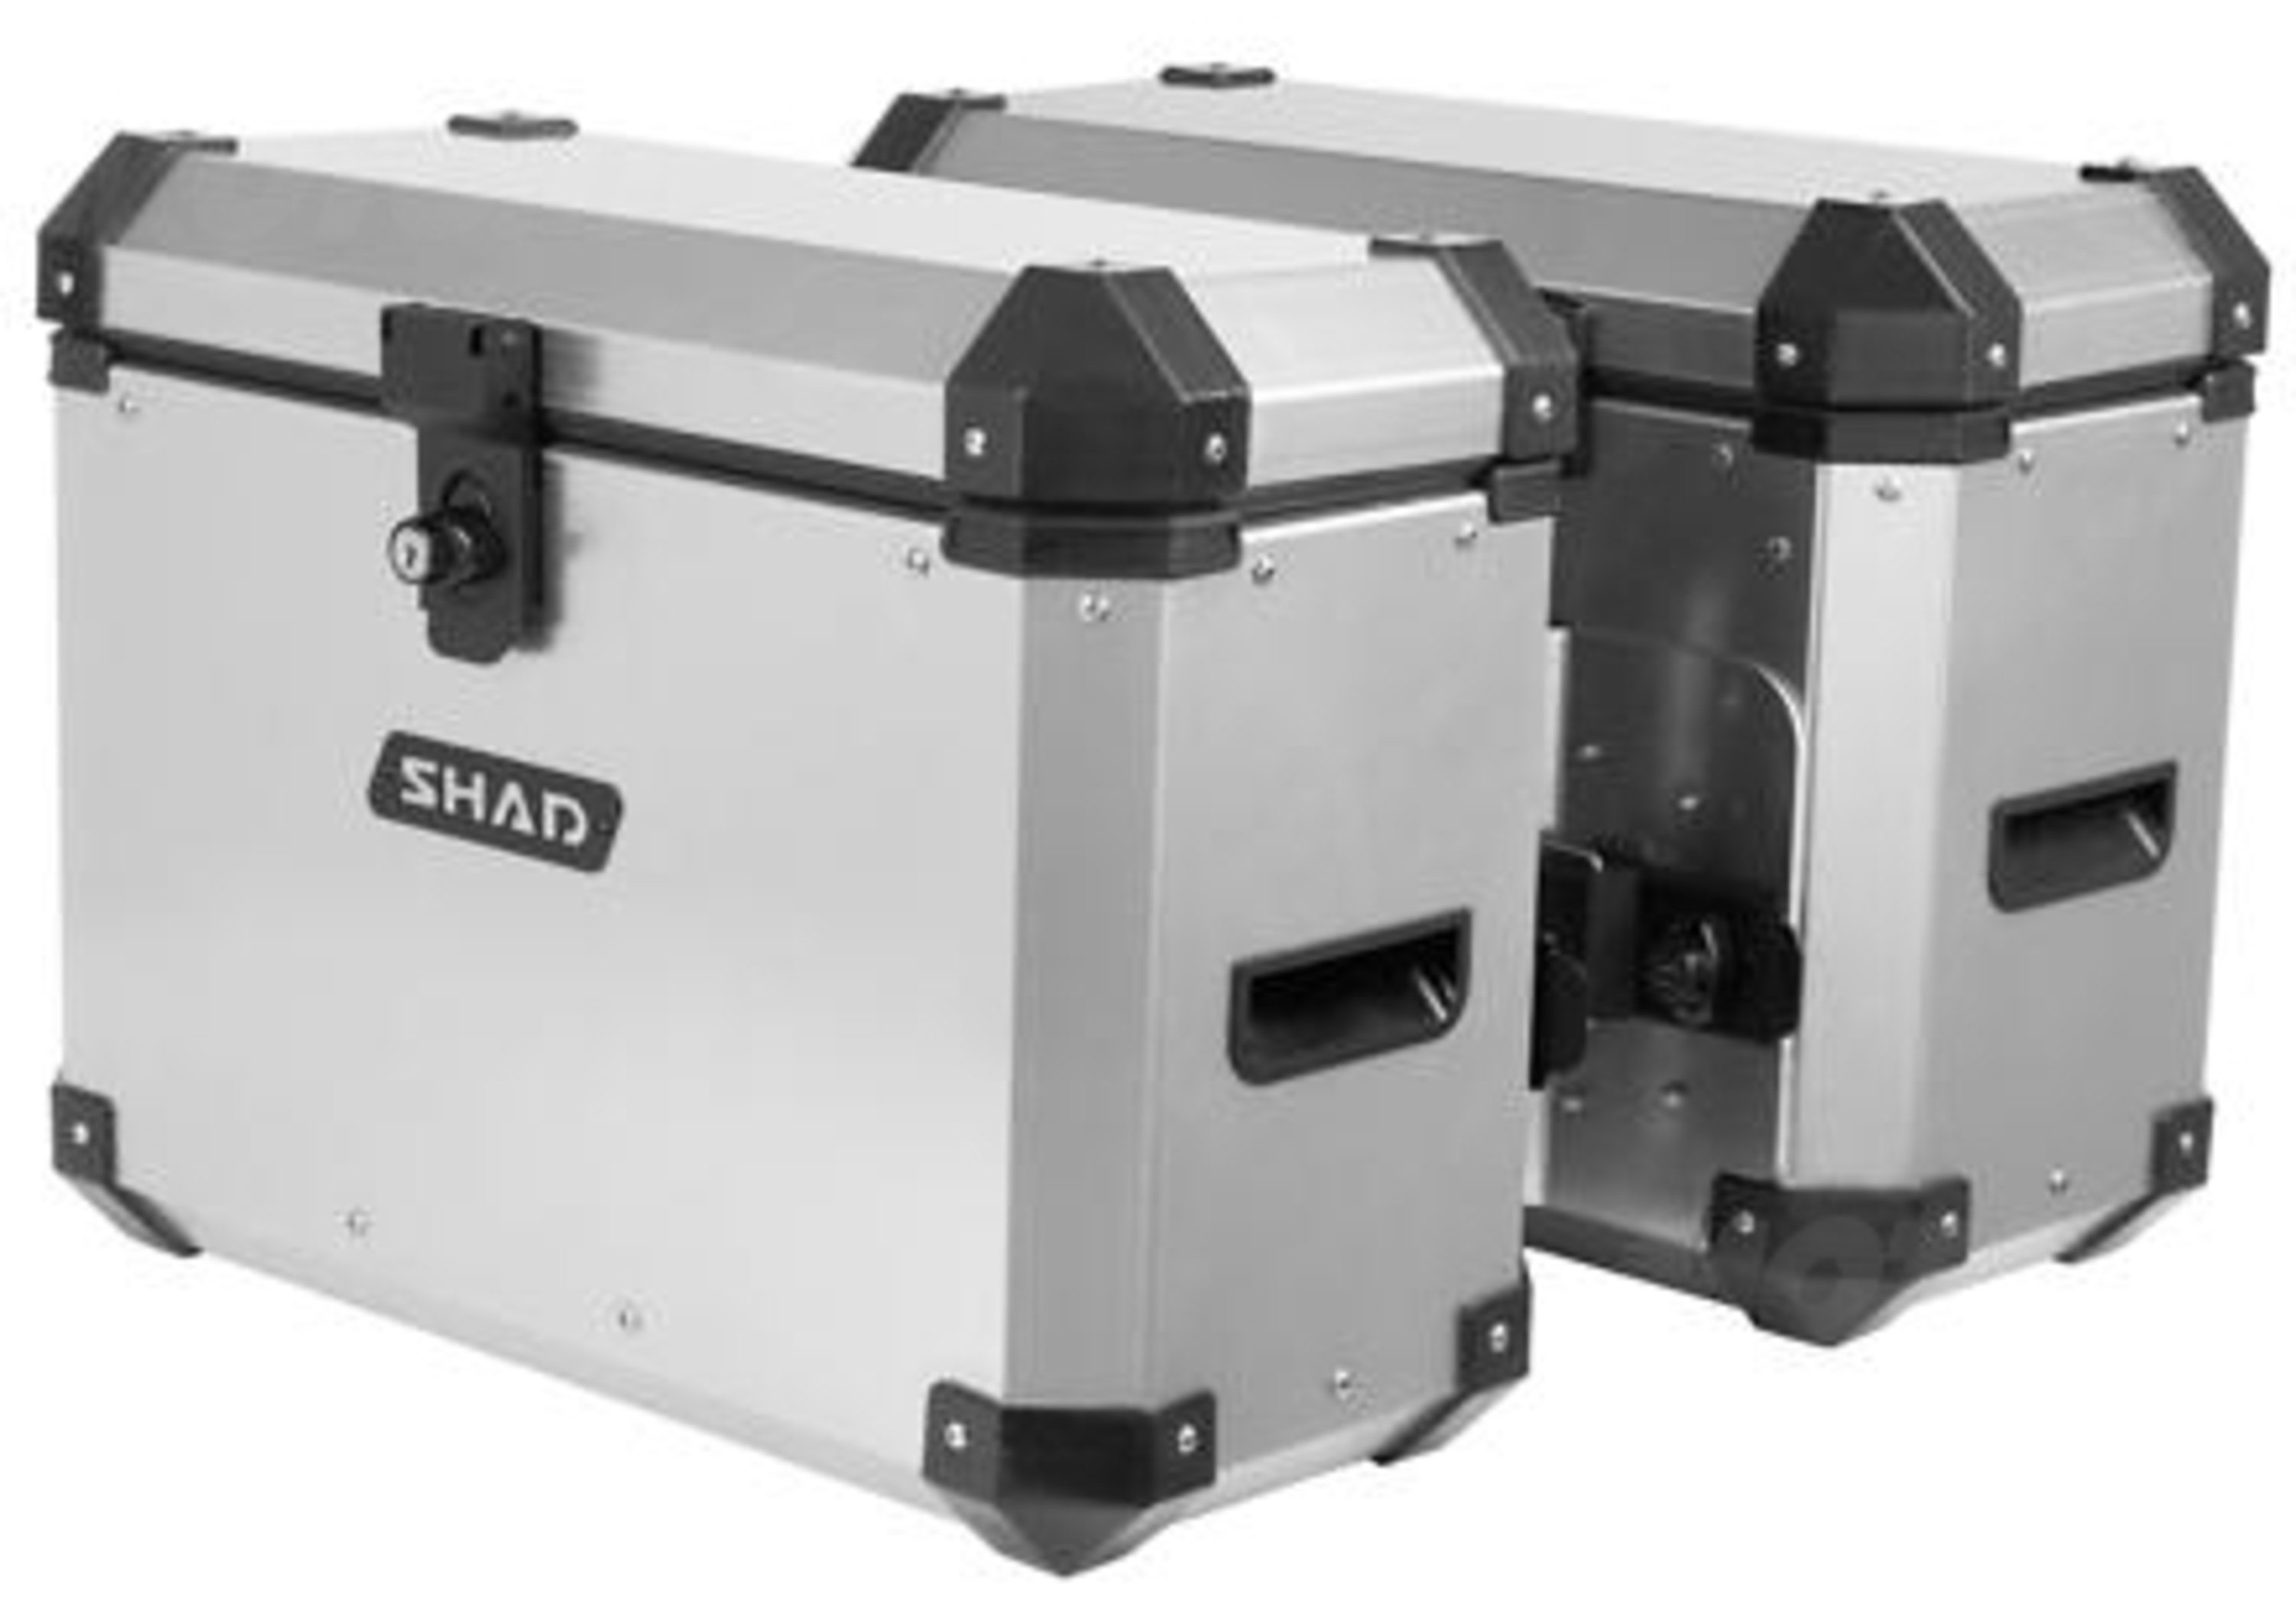 Shad: in arrivo a fine marzo le nuove valigie in alluminio ST38